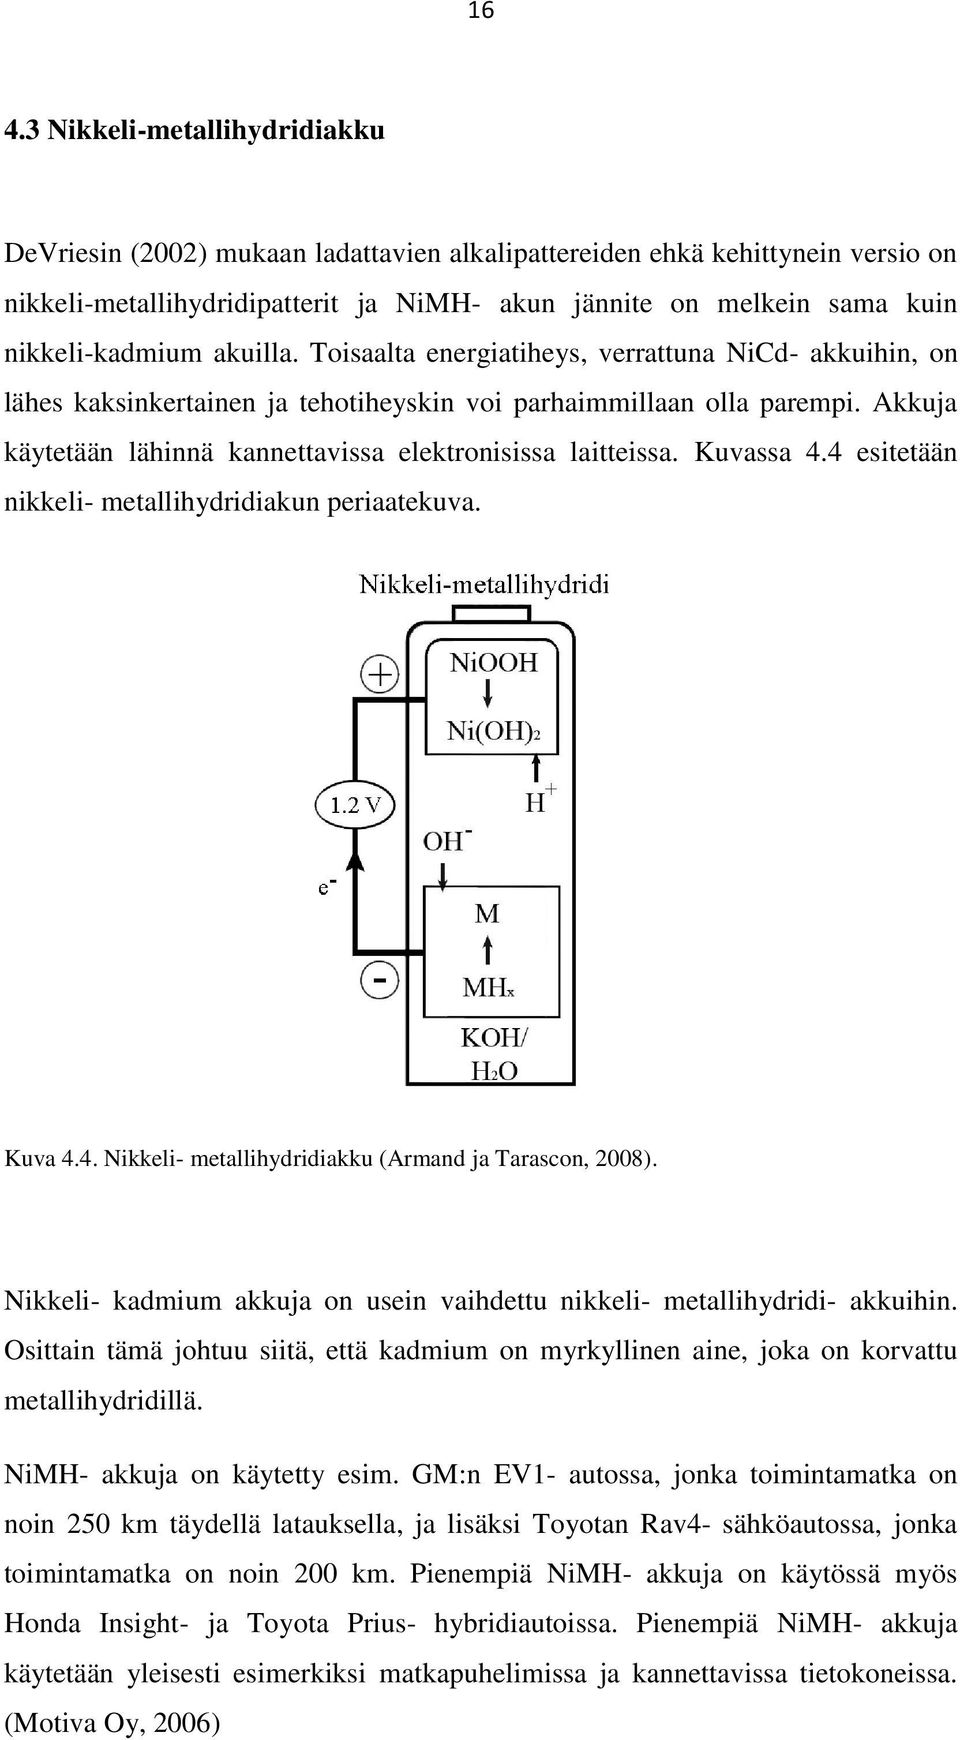 Akkuja käytetään lähinnä kannettavissa elektronisissa laitteissa. Kuvassa 4.4 esitetään nikkeli- metallihydridiakun periaatekuva. Kuva 4.4. Nikkeli- metallihydridiakku (Armand ja Tarascon, 2008).